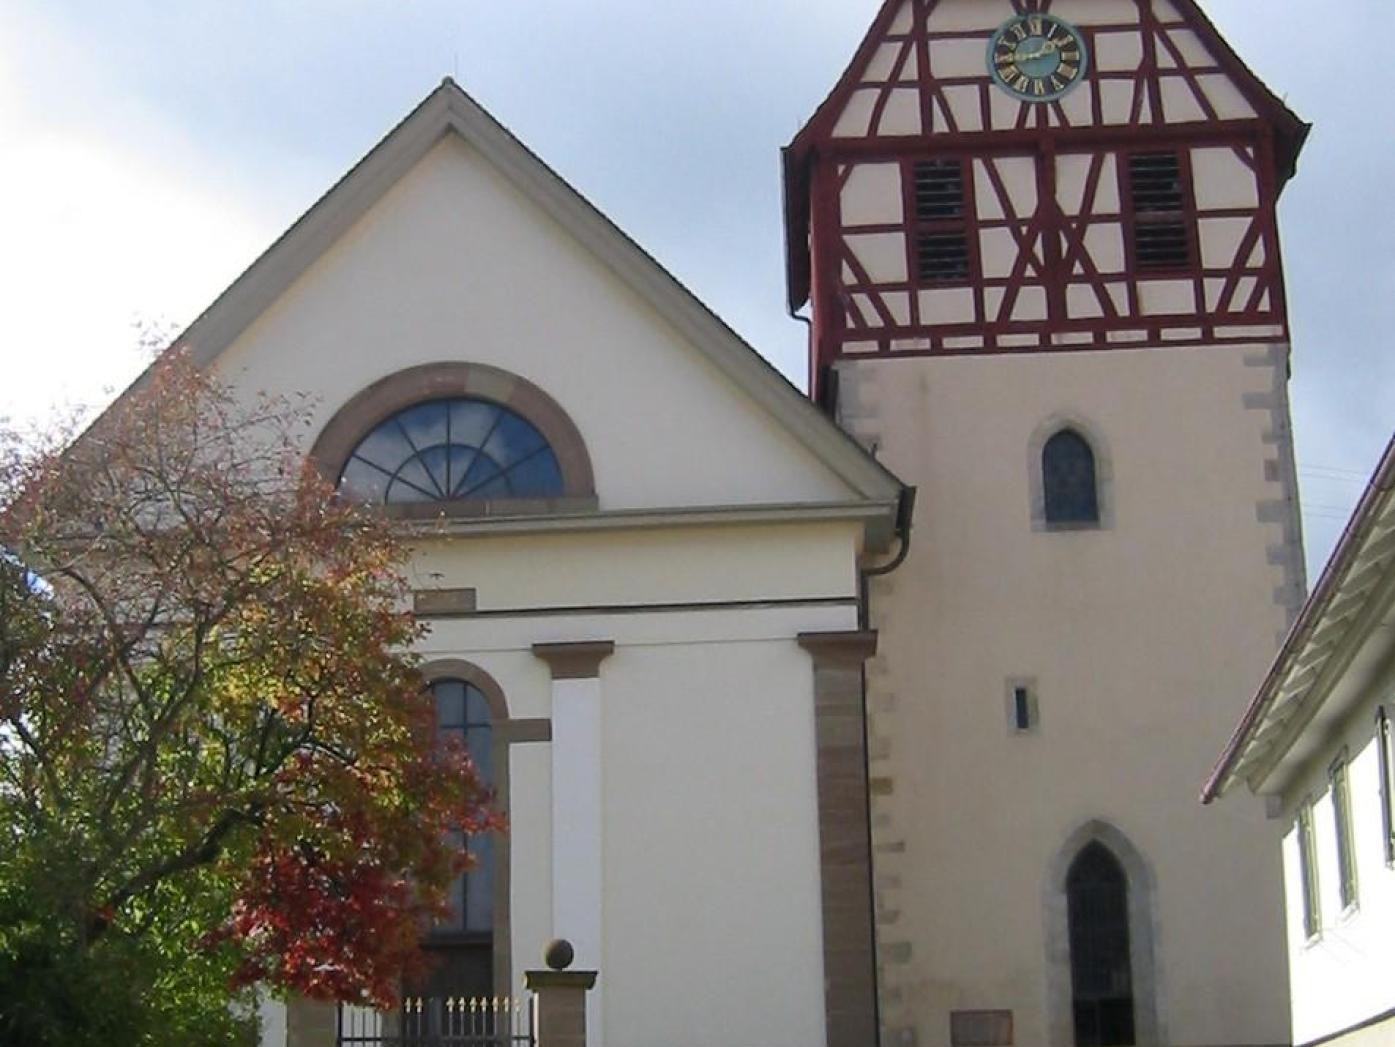 Karsthanskirche Täbingen